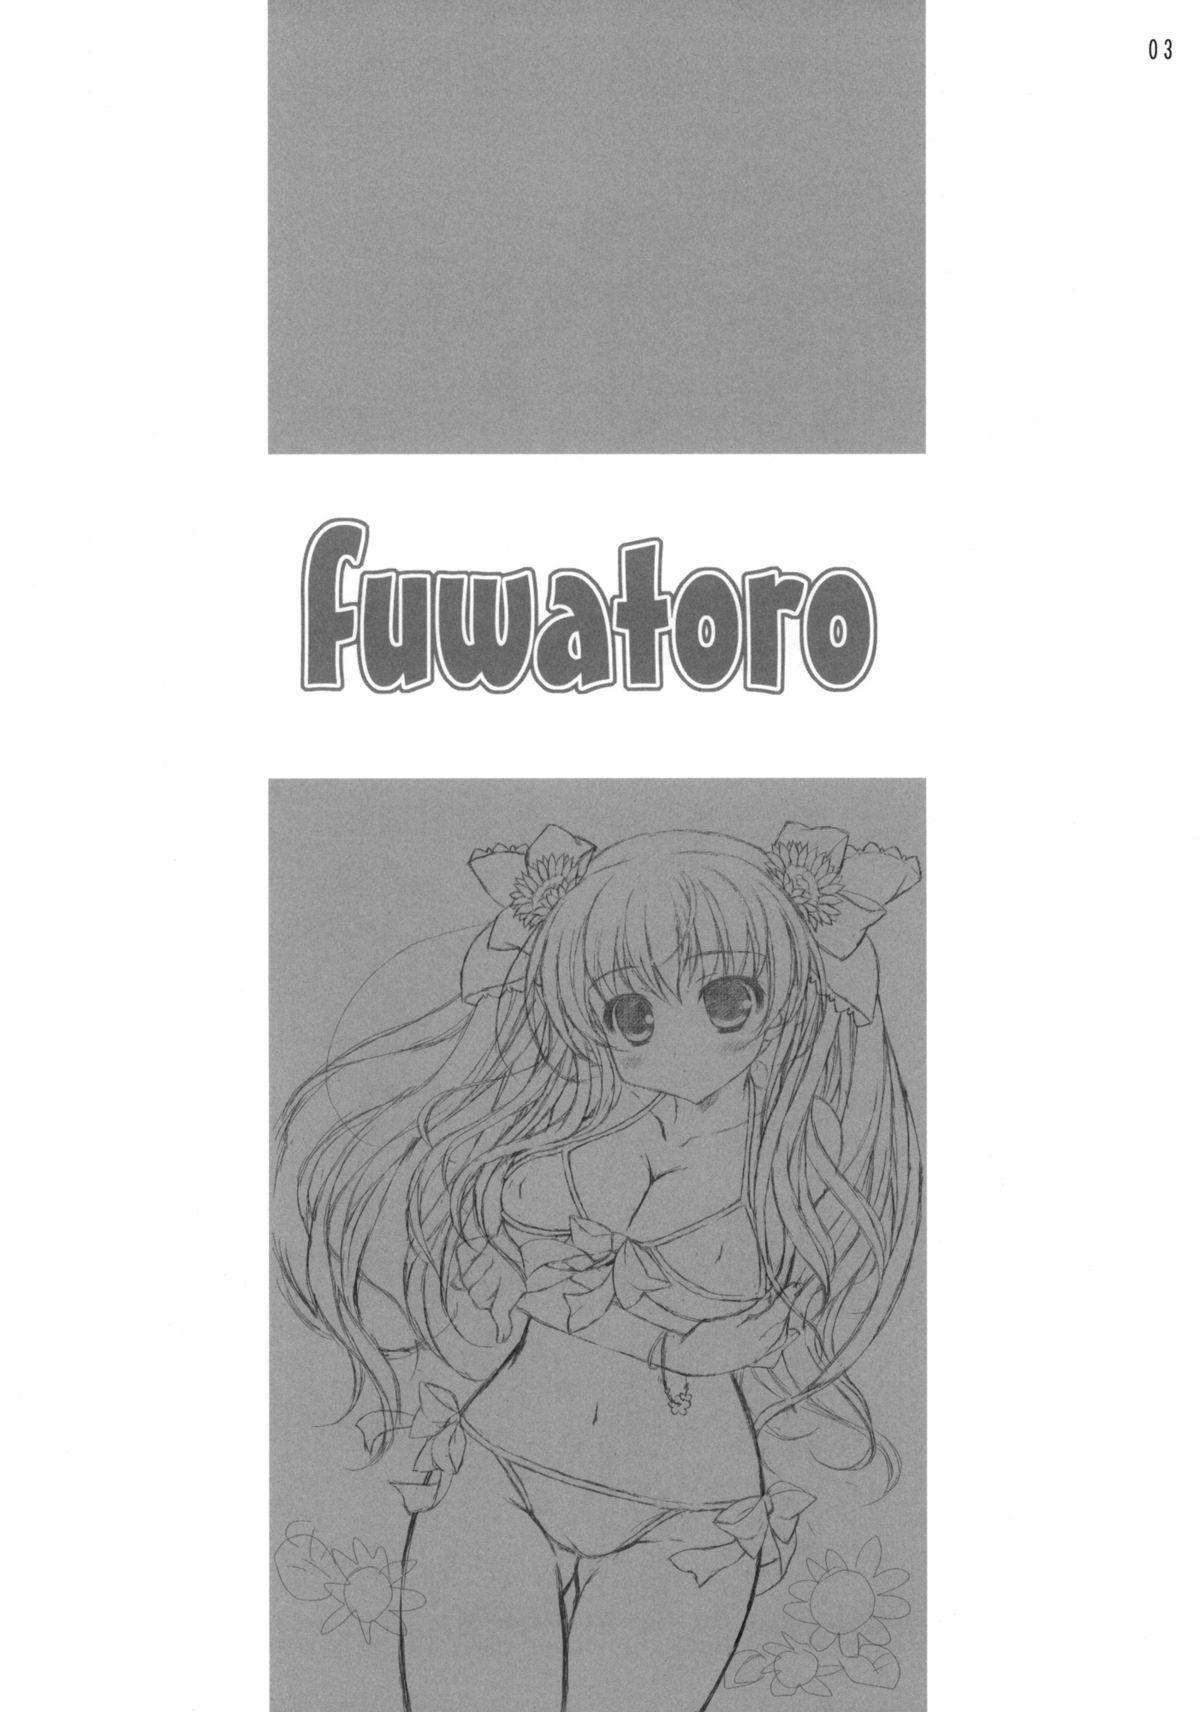 fuwatoro 1